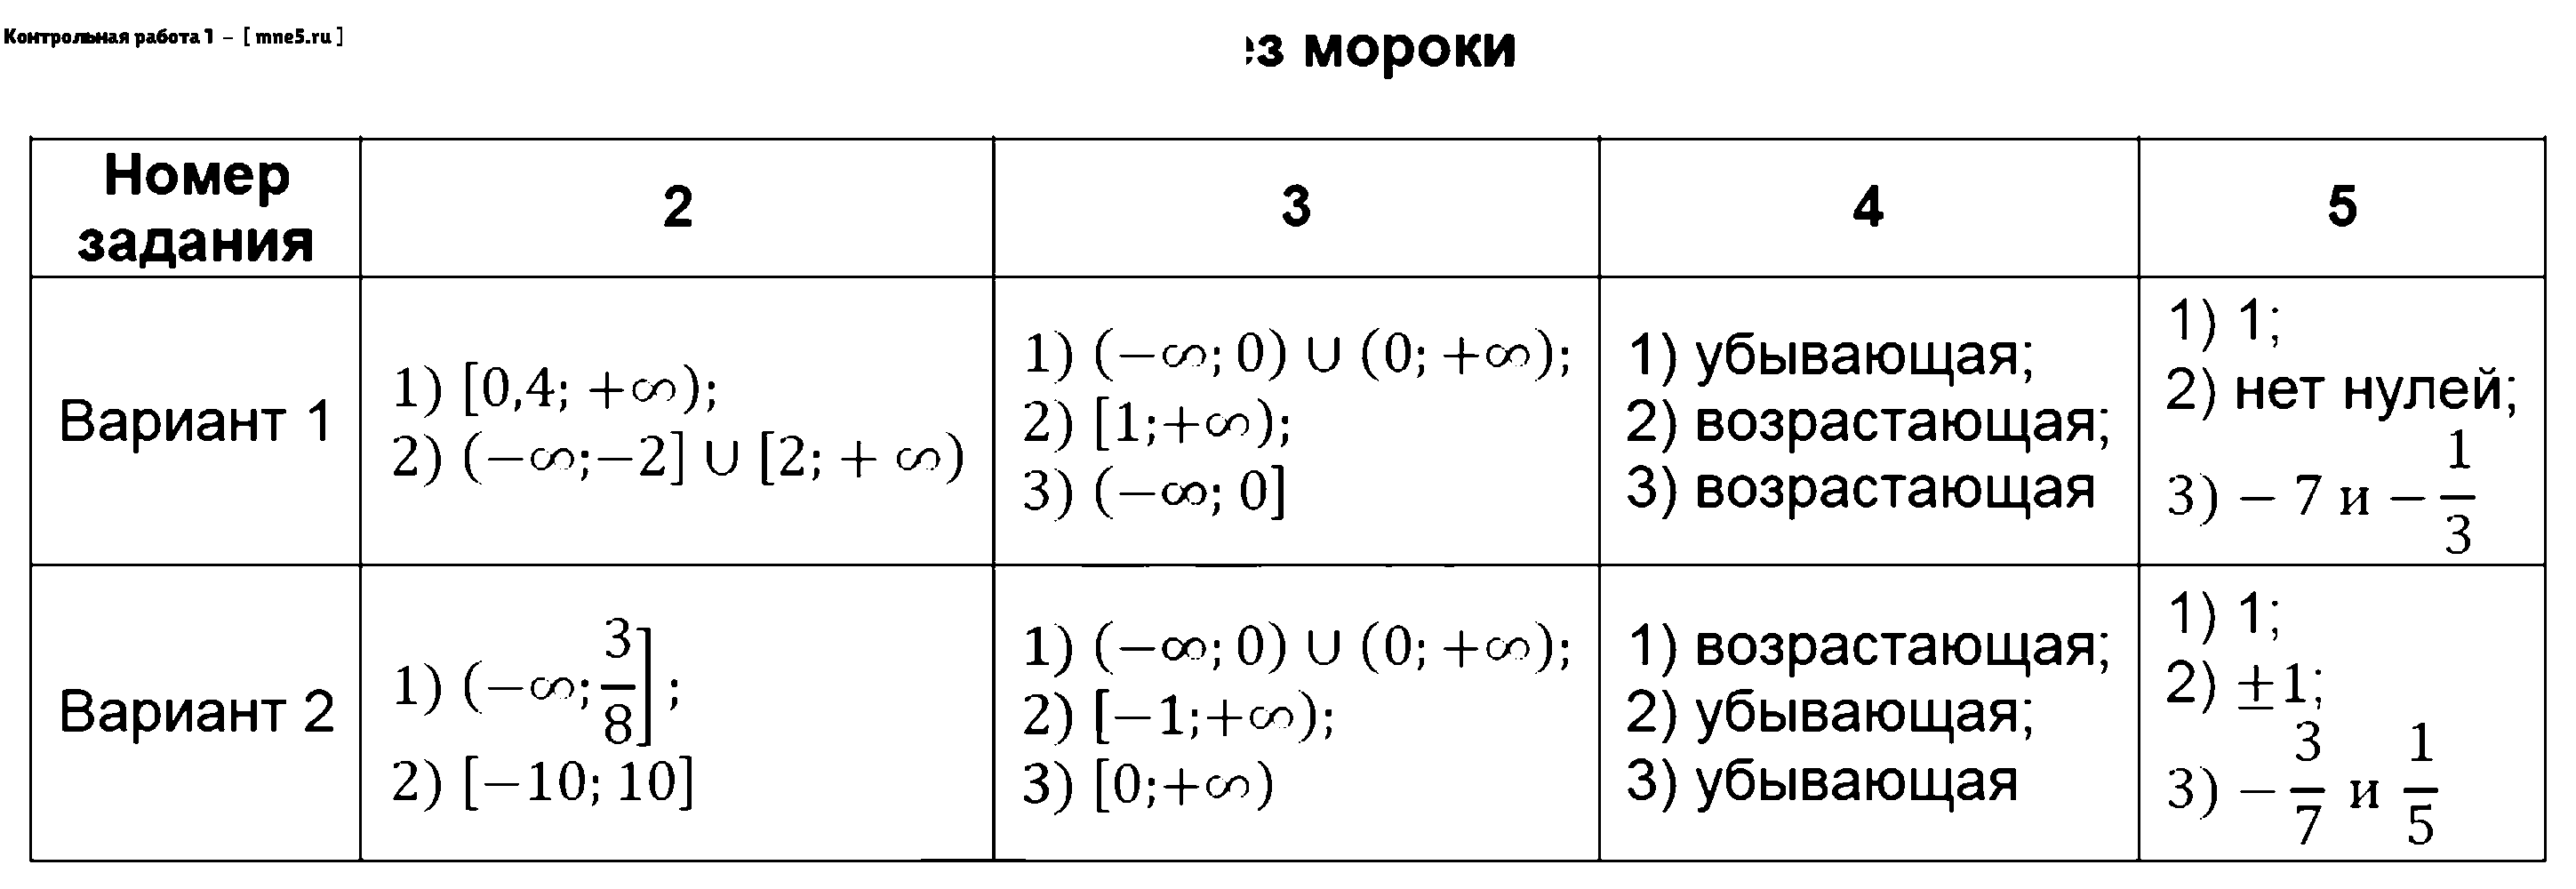 ГДЗ Алгебра 9 класс - Контрольная работа 1